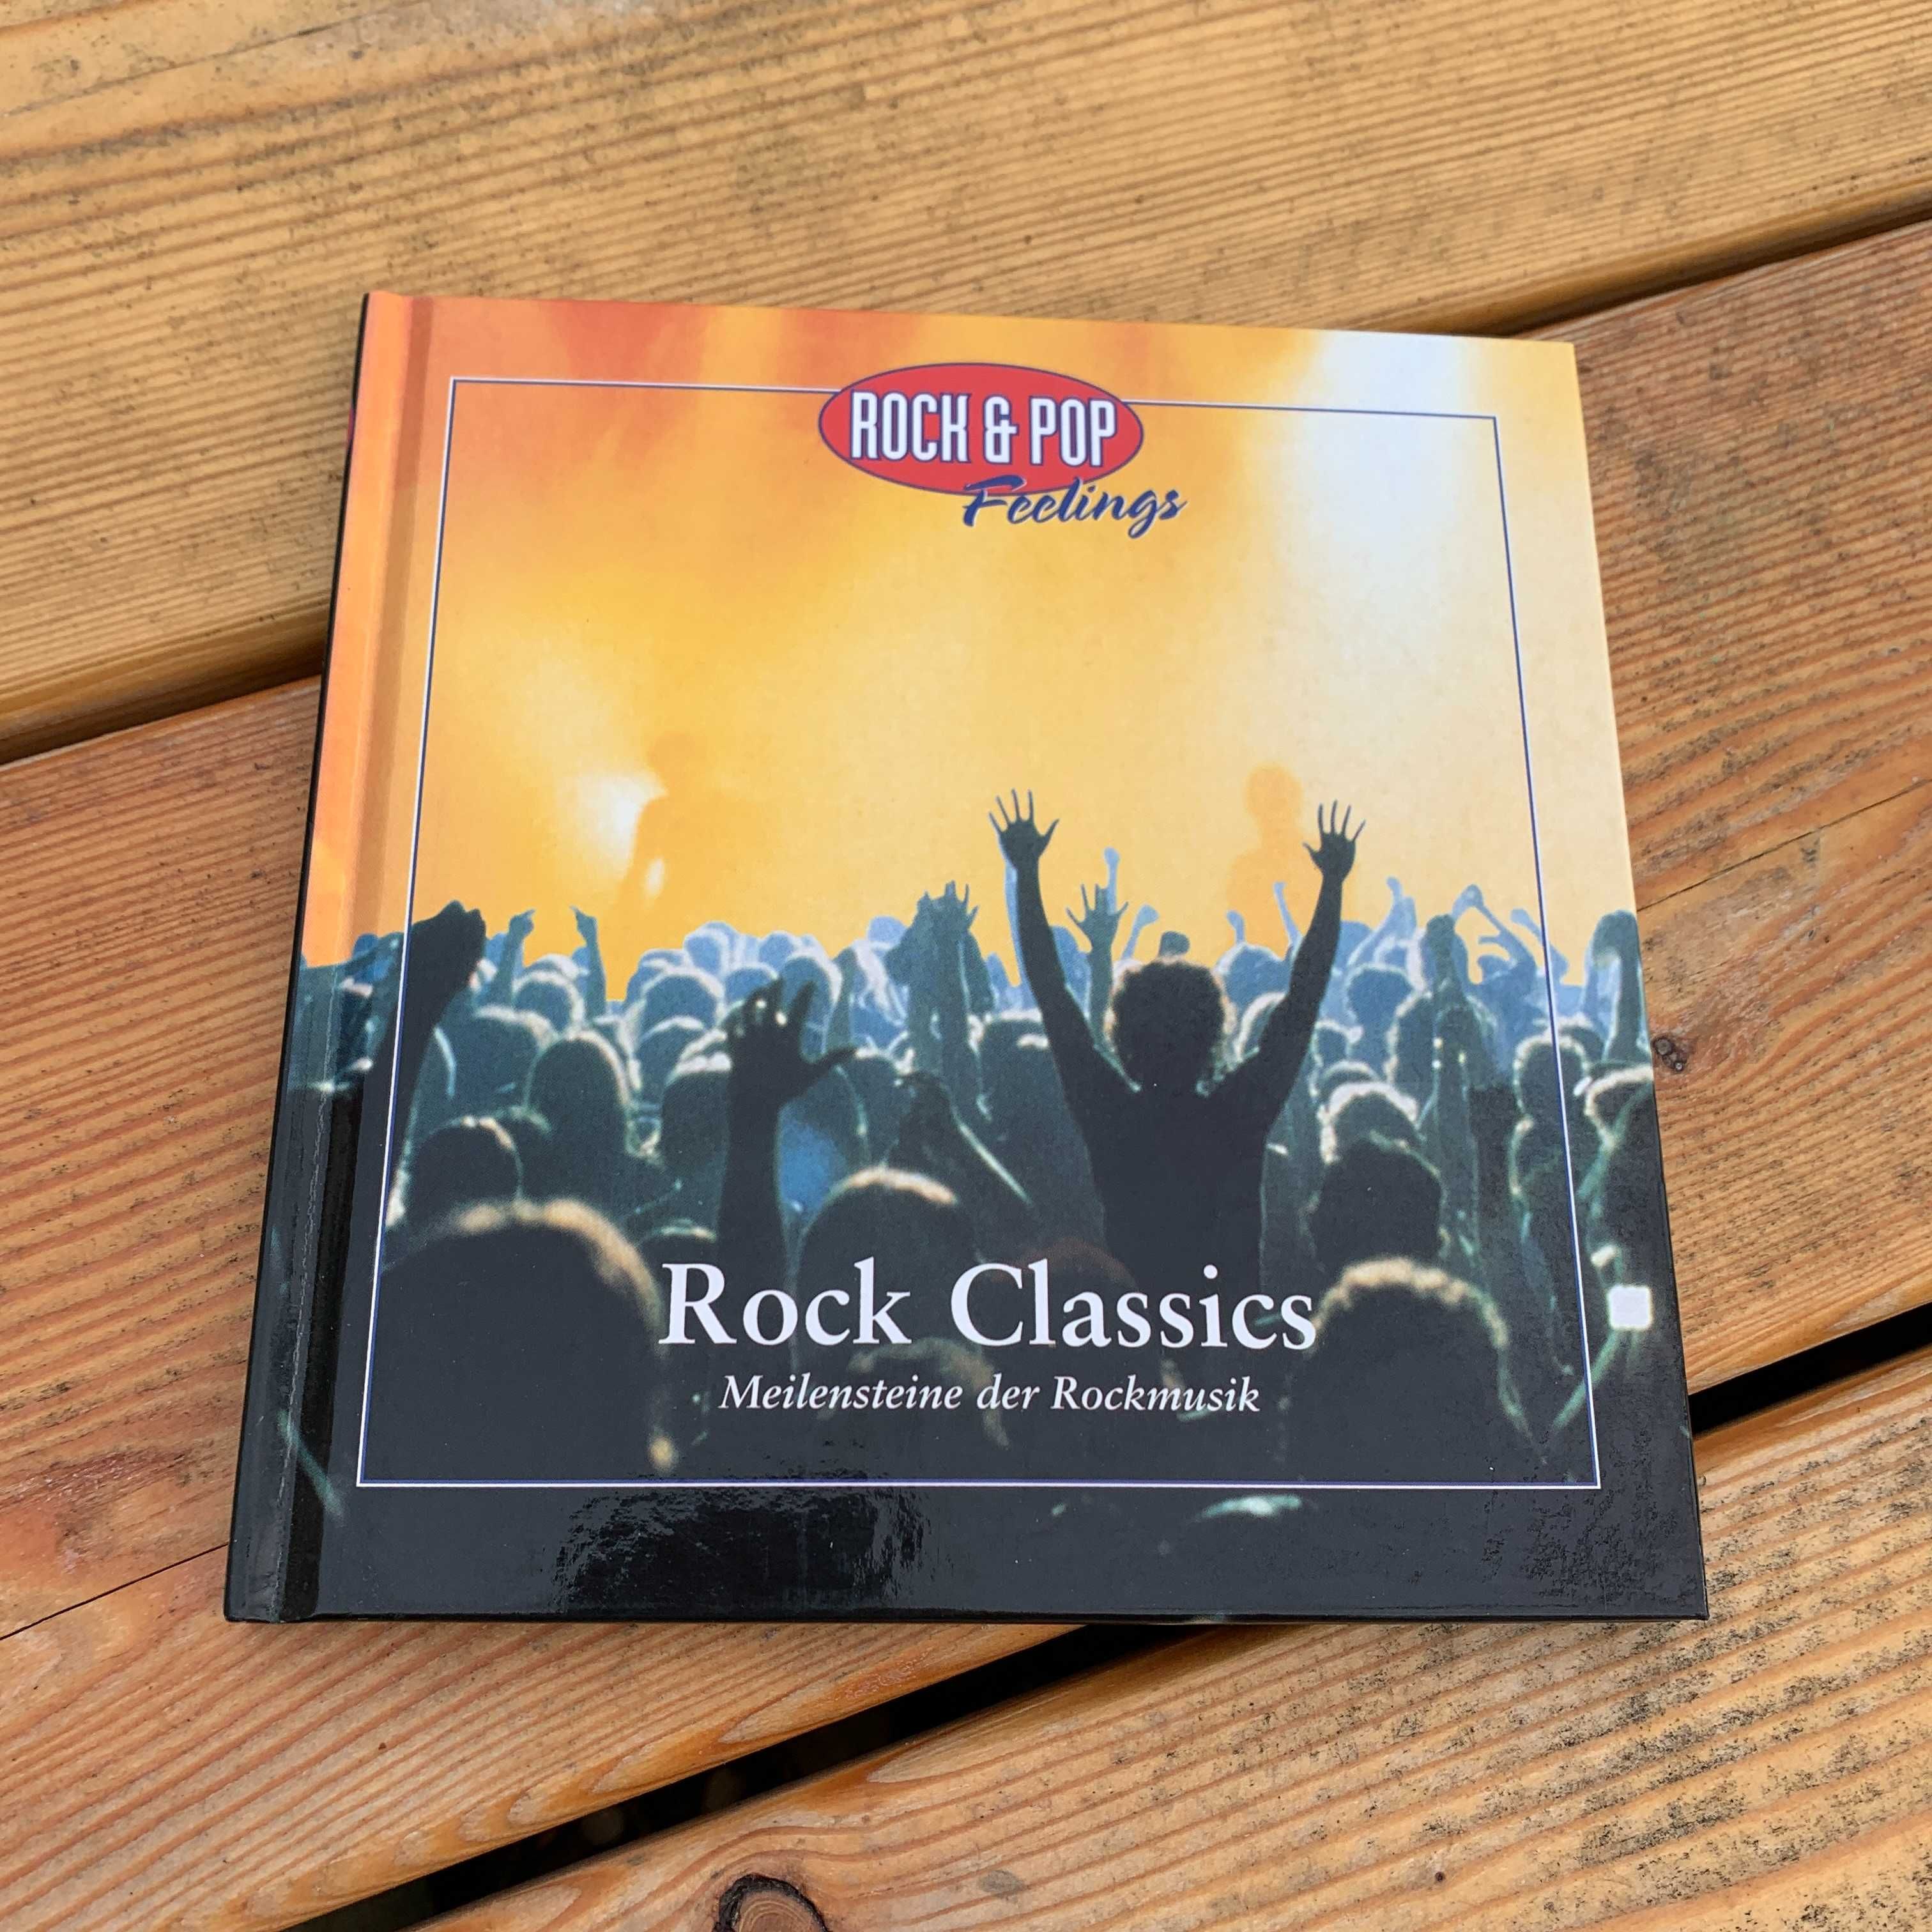 Rock & Pop Feelings: Rock Classics (DE-P-53-10-20-002 Germany)